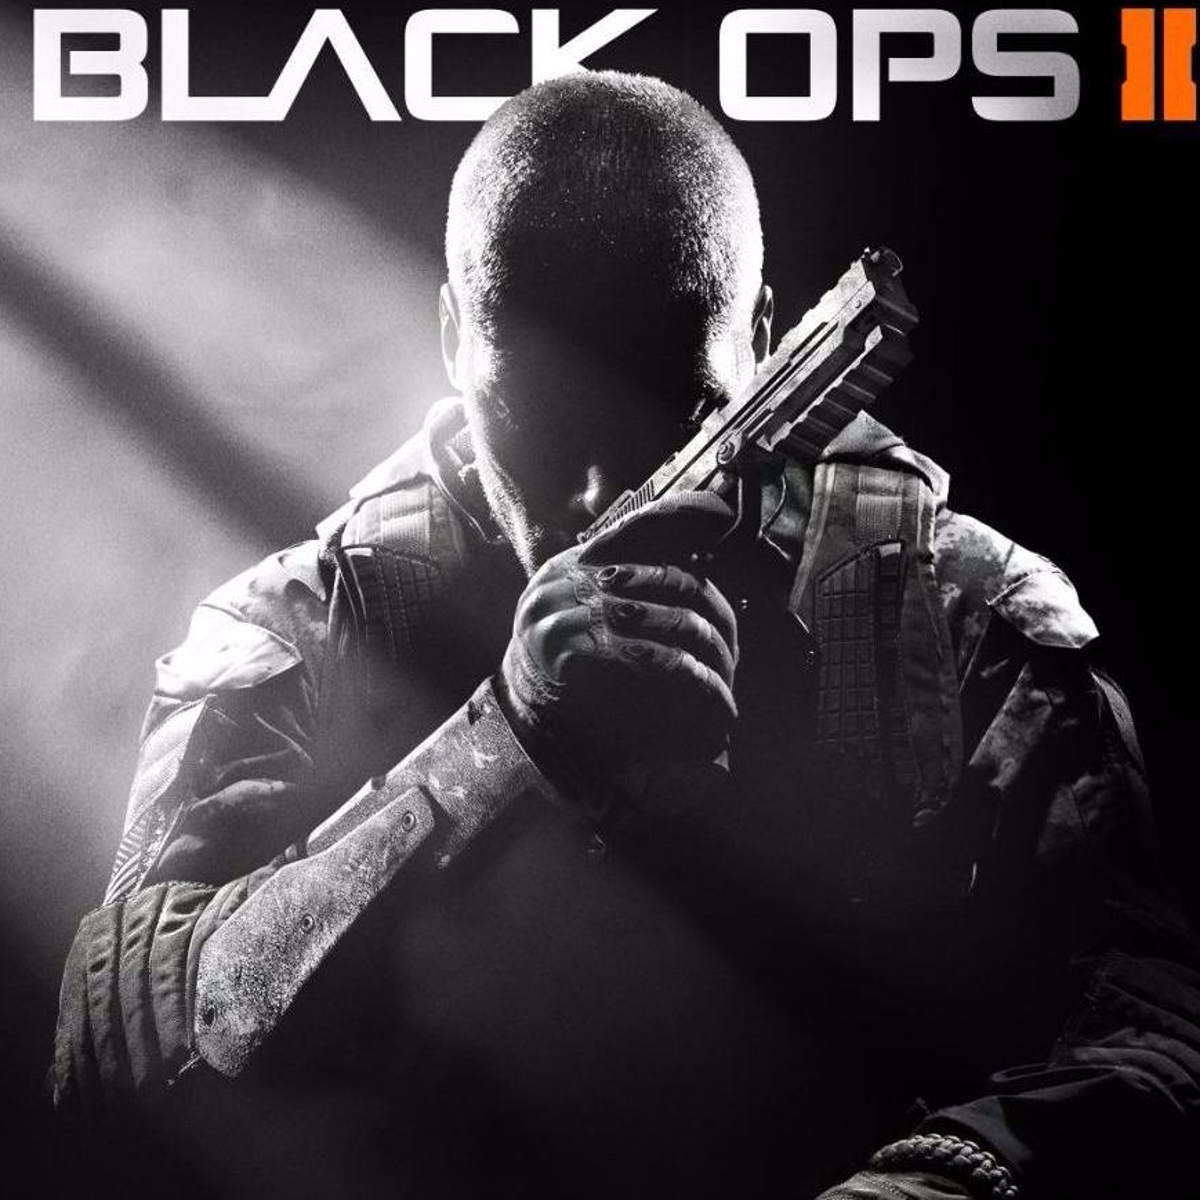 Black Ops 2 in 2021.. 😍 